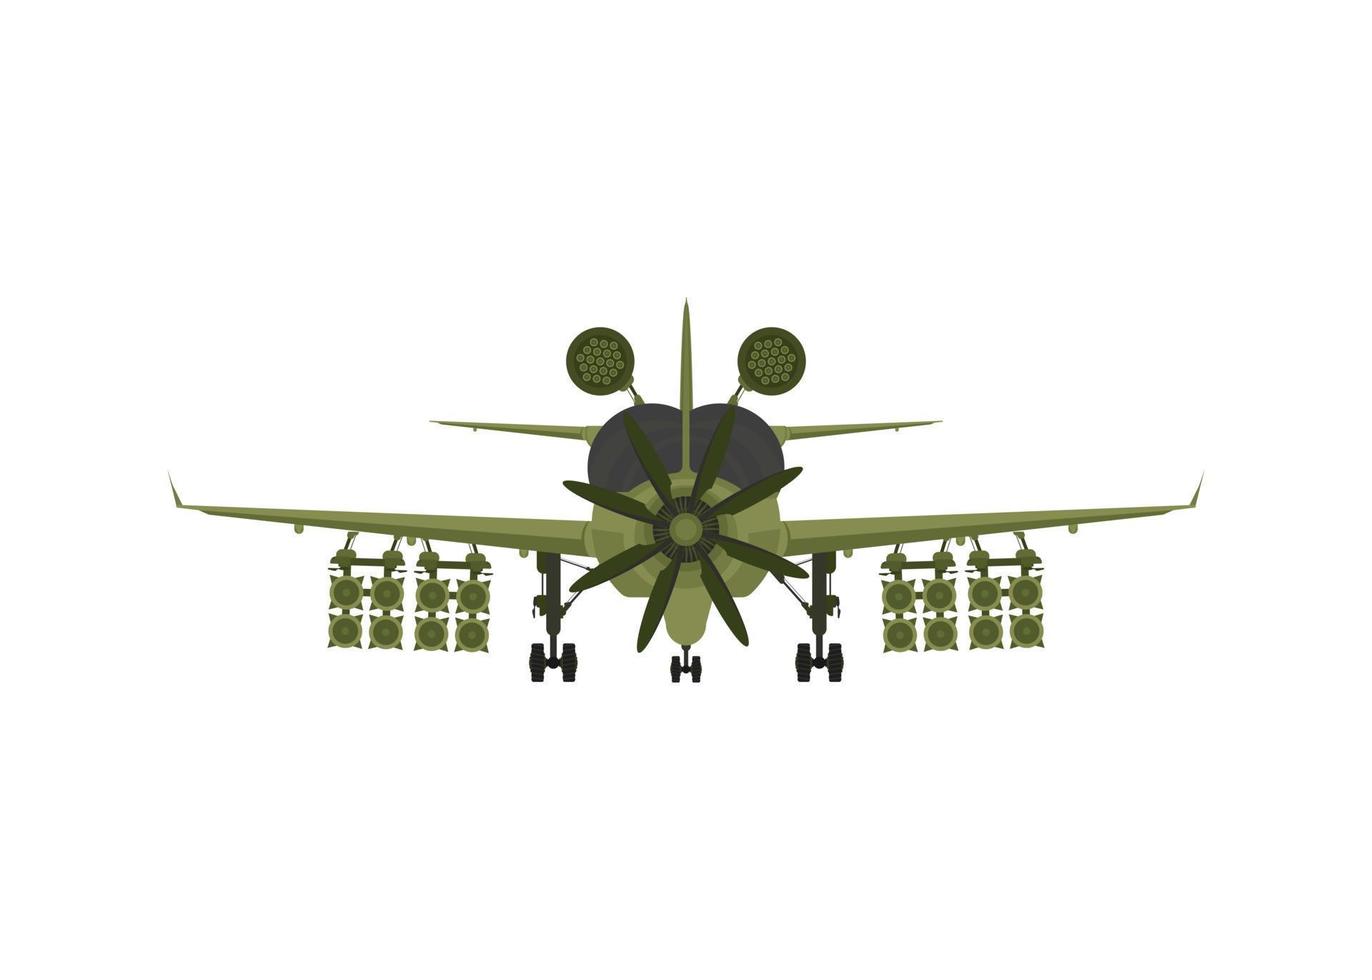 chasseur, avion militaire avec missiles à bord. illustration isolé sur fond blanc. illustration vectorielle vecteur